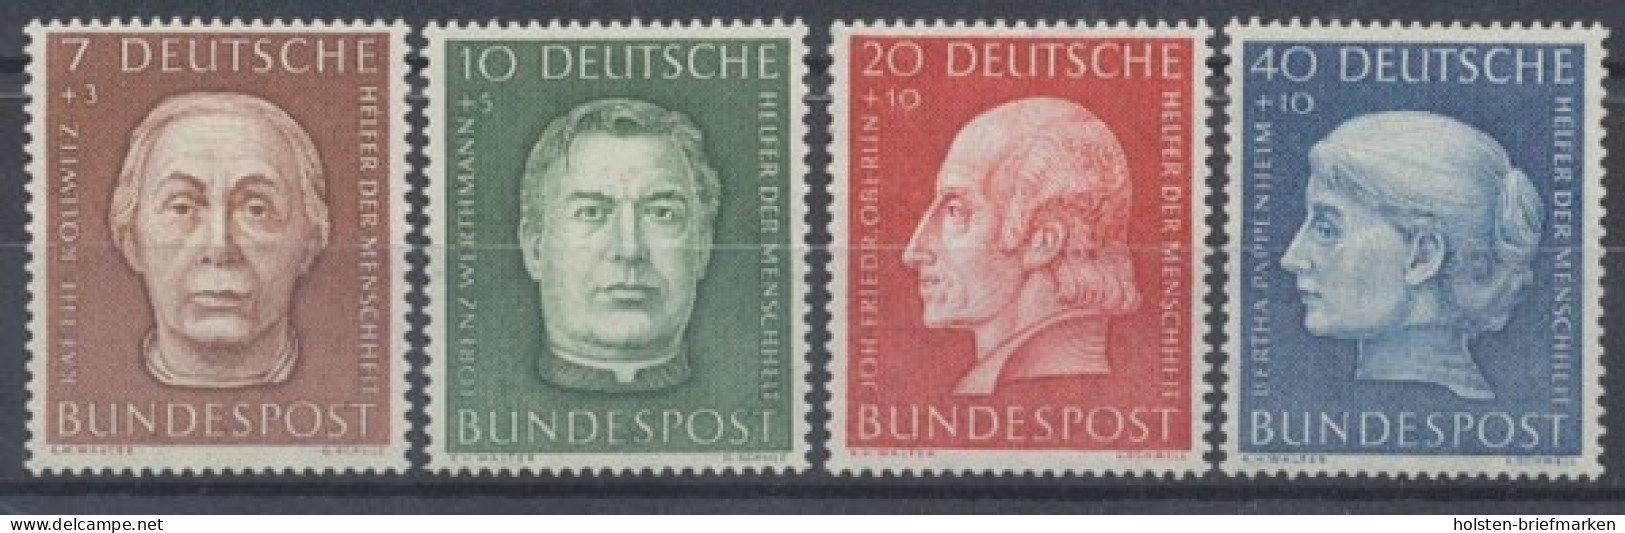 Deutschland (BRD), MiNr. 200-203, Postfrisch - Neufs